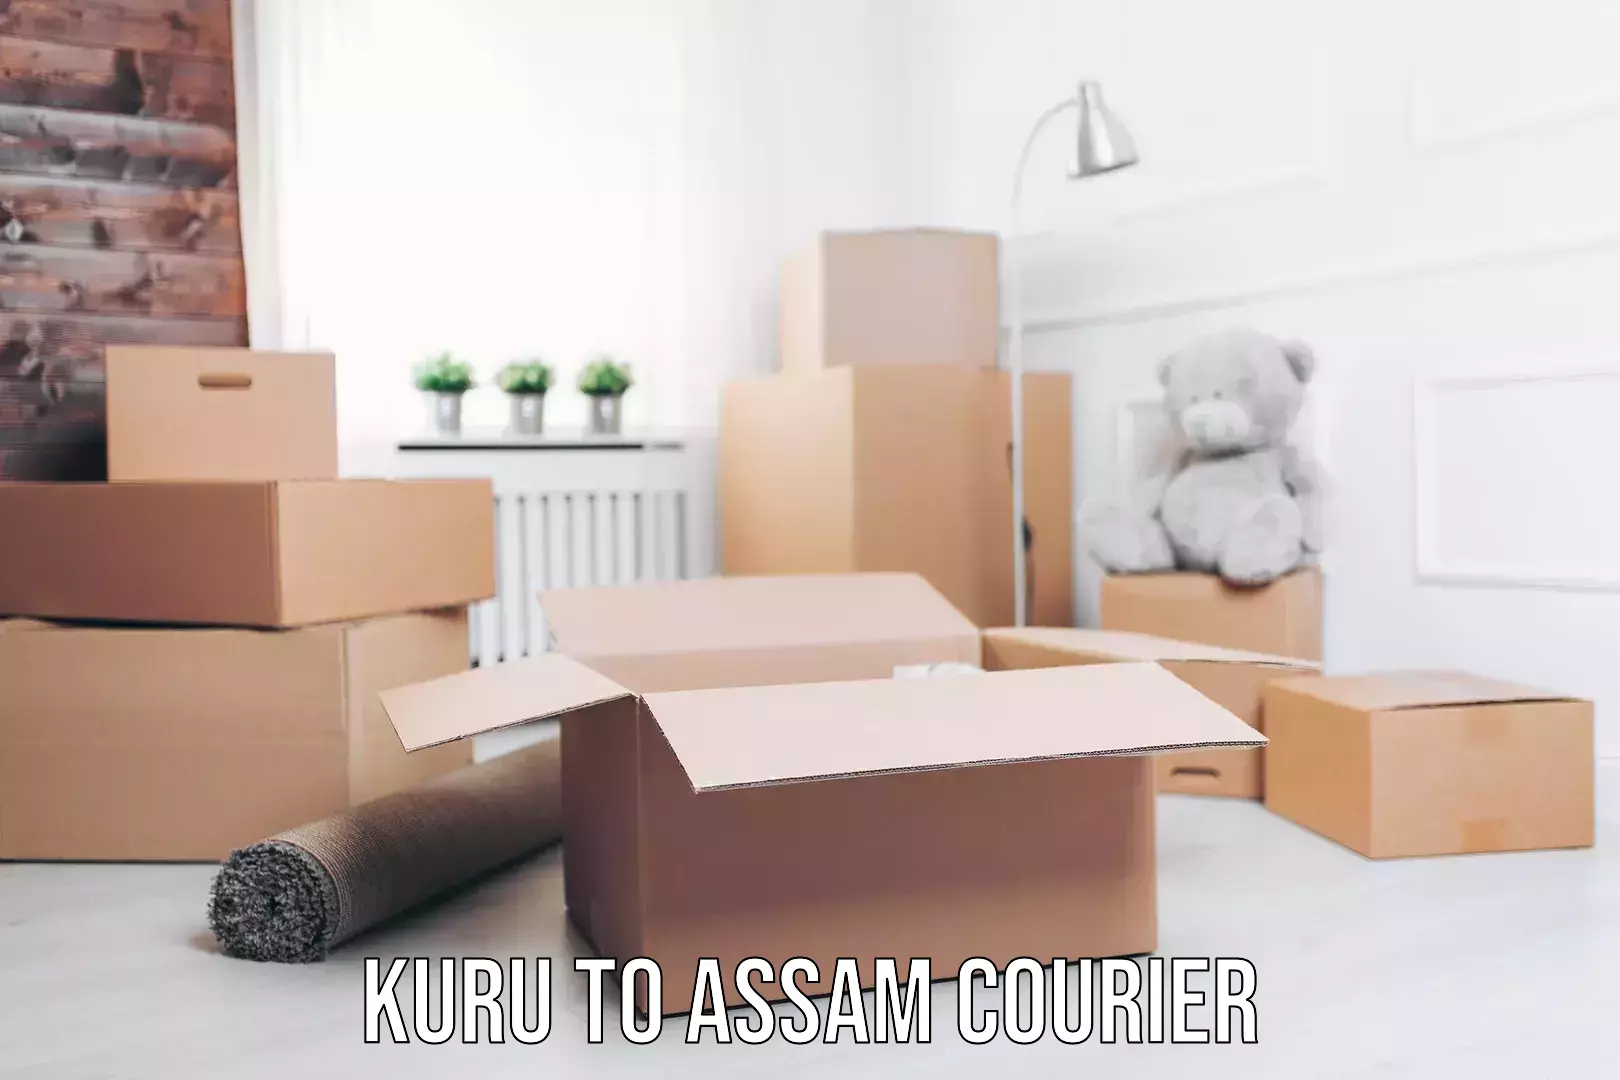 Furniture delivery service Kuru to Assam